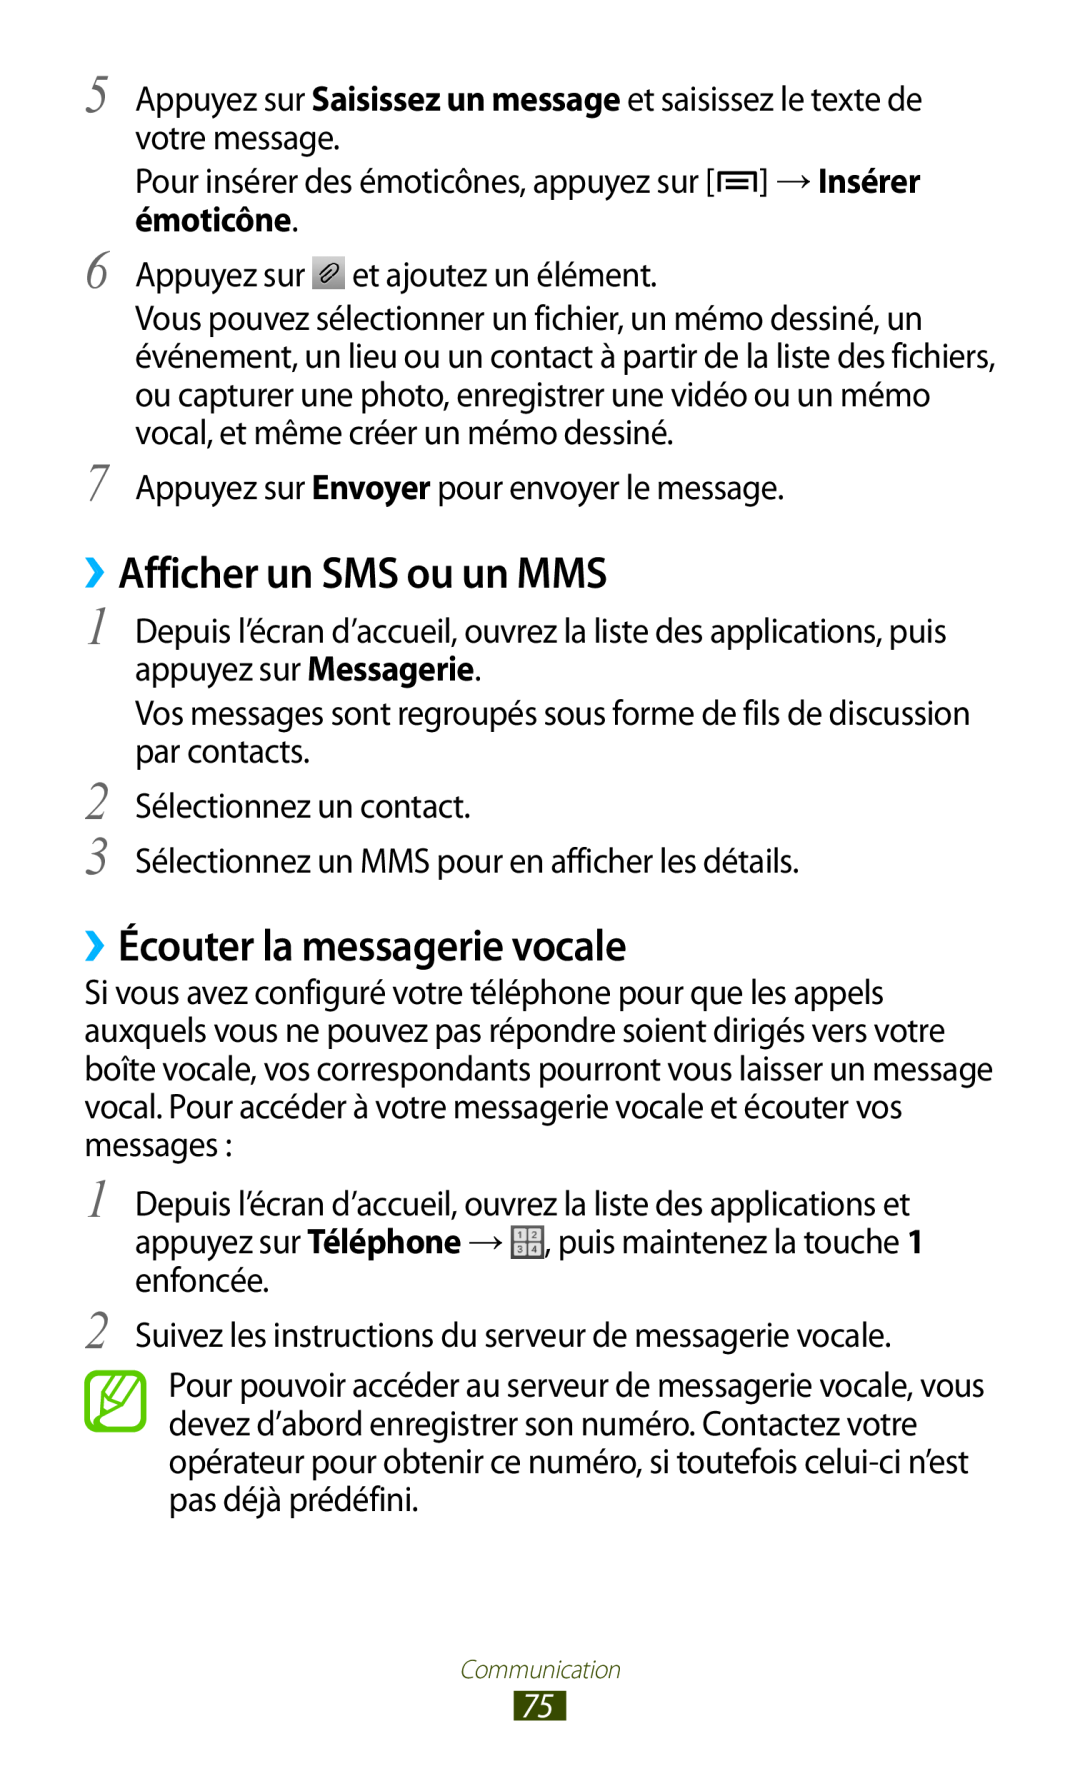 Samsung GT-N7000ZIASFR, GT-N7000ZIABOG, GT-N7000ZBAFTM manual ››Afficher un SMS ou un MMS, ››Écouter la messagerie vocale 